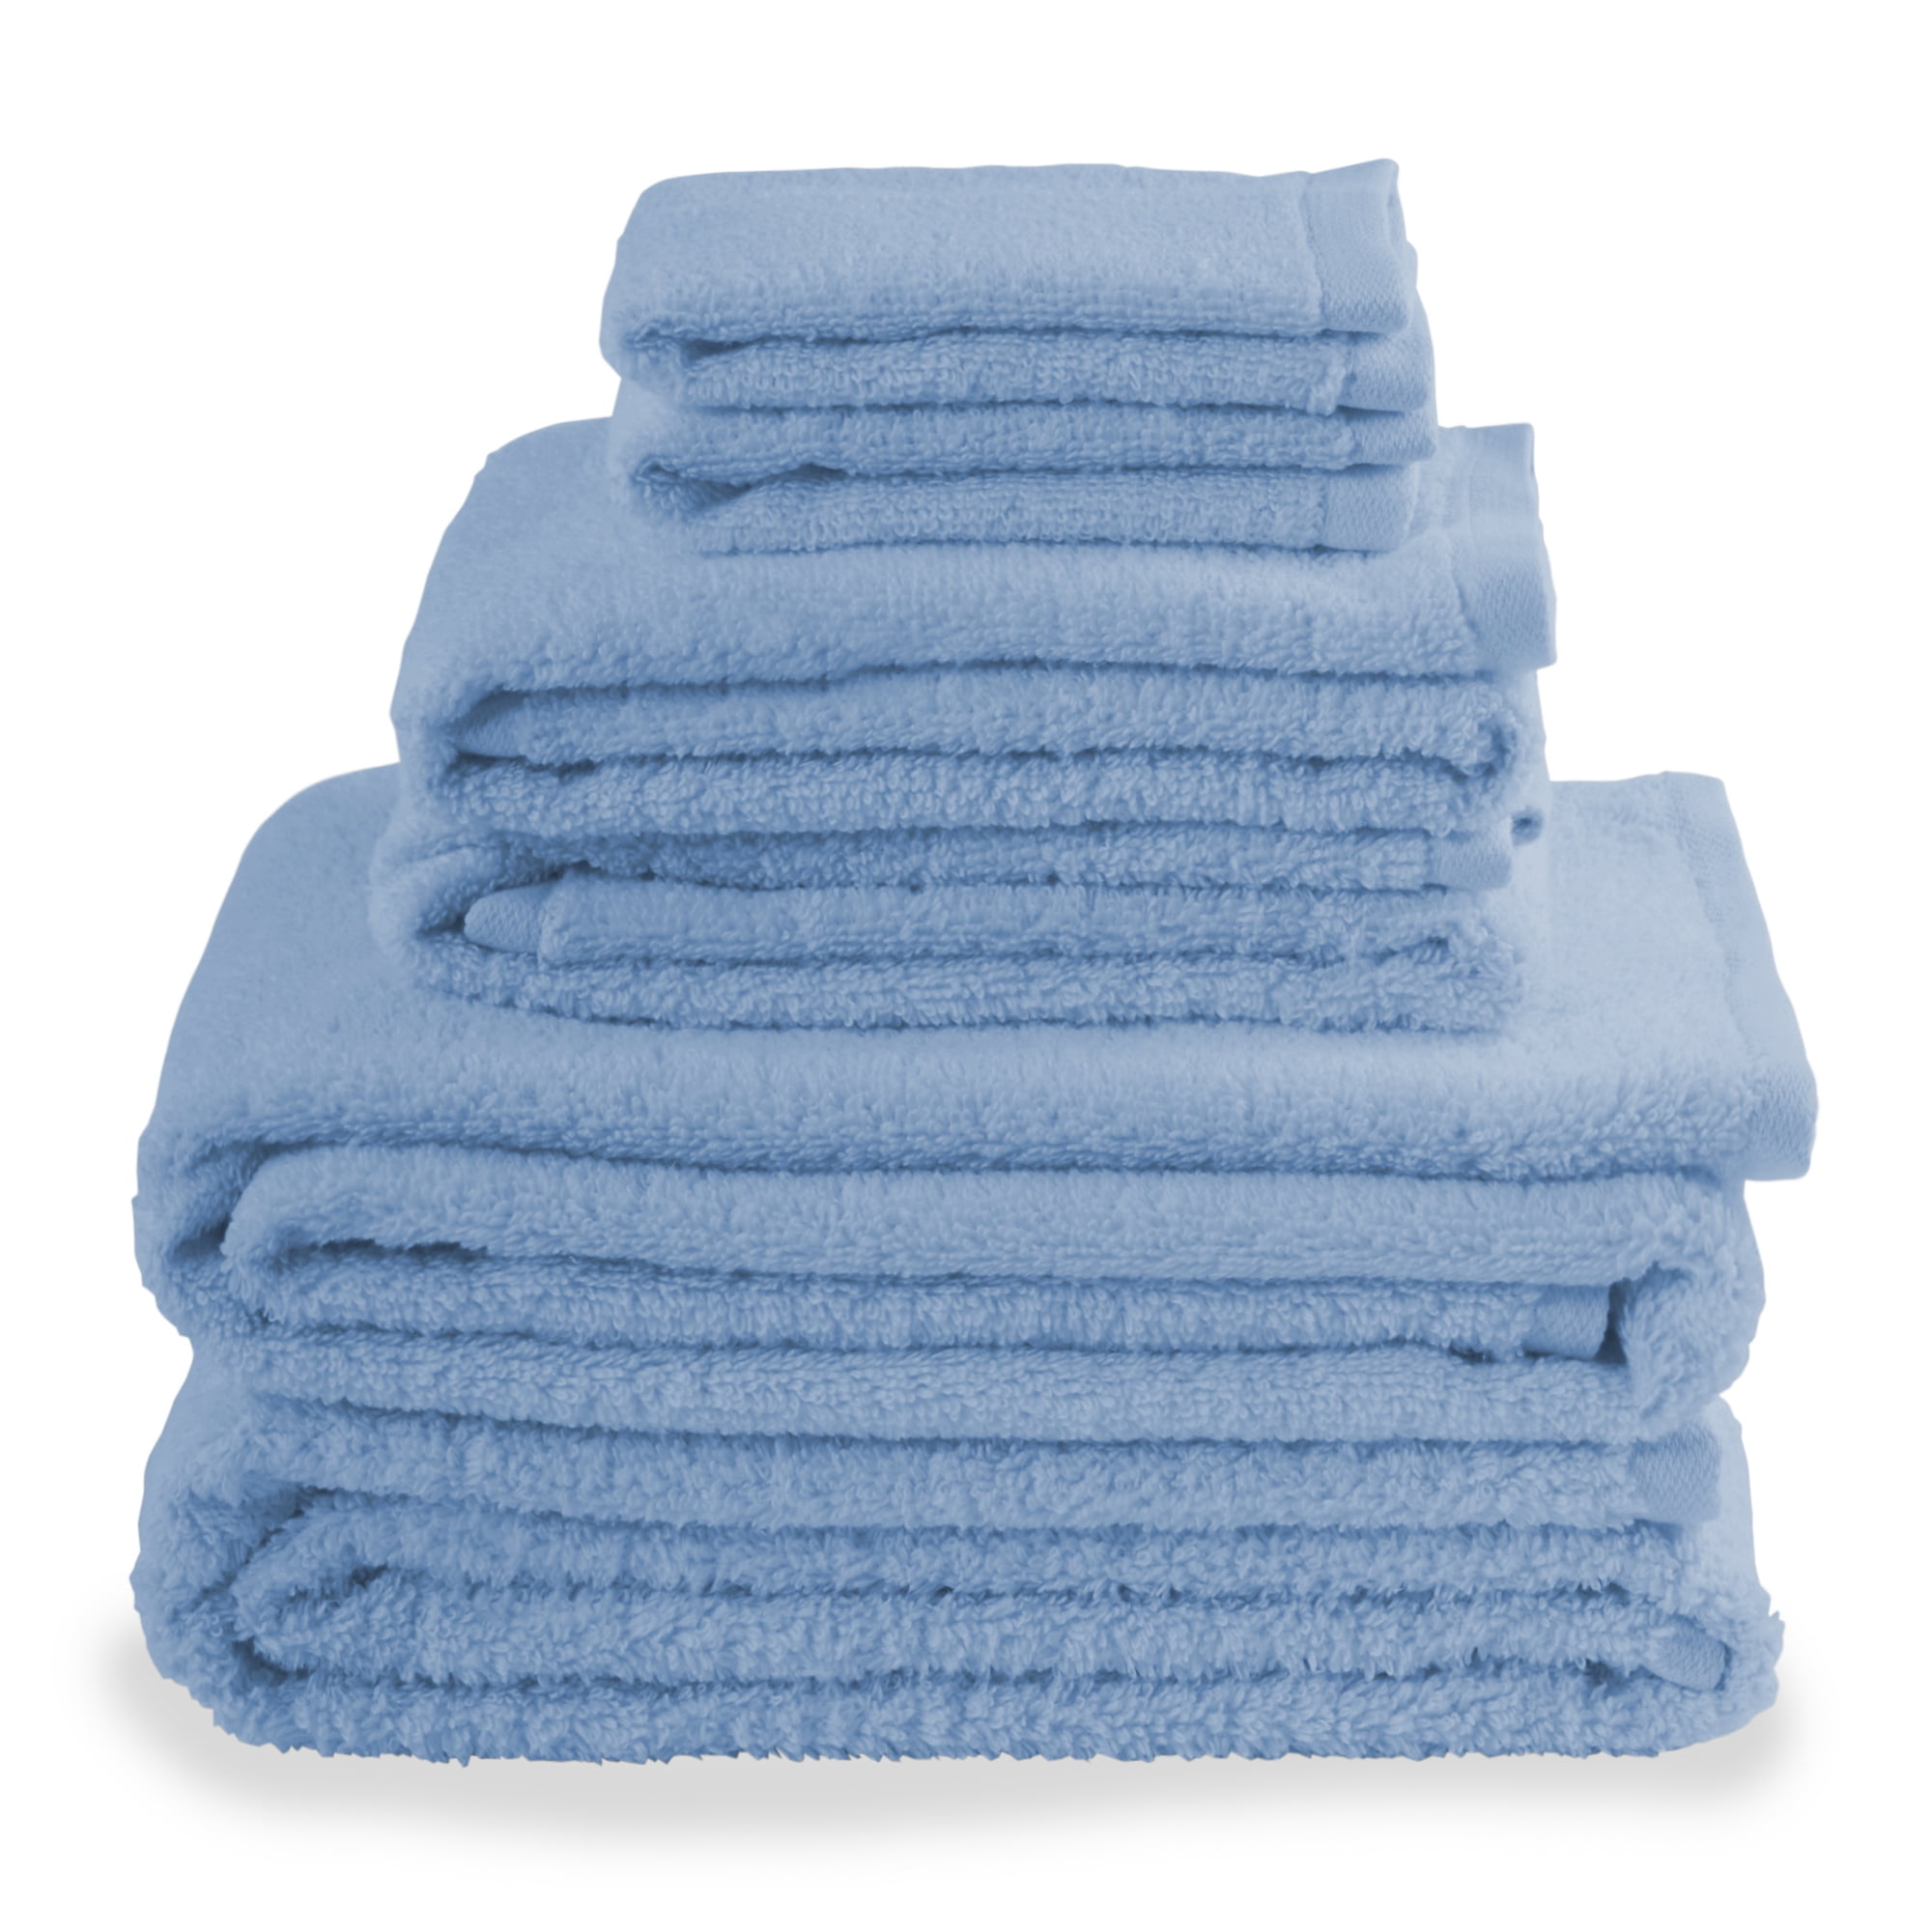 Towels Set 100% Cotton Bath Sheet Hand Large Bale 500 GSM Bathroom & 6 Piece Set 